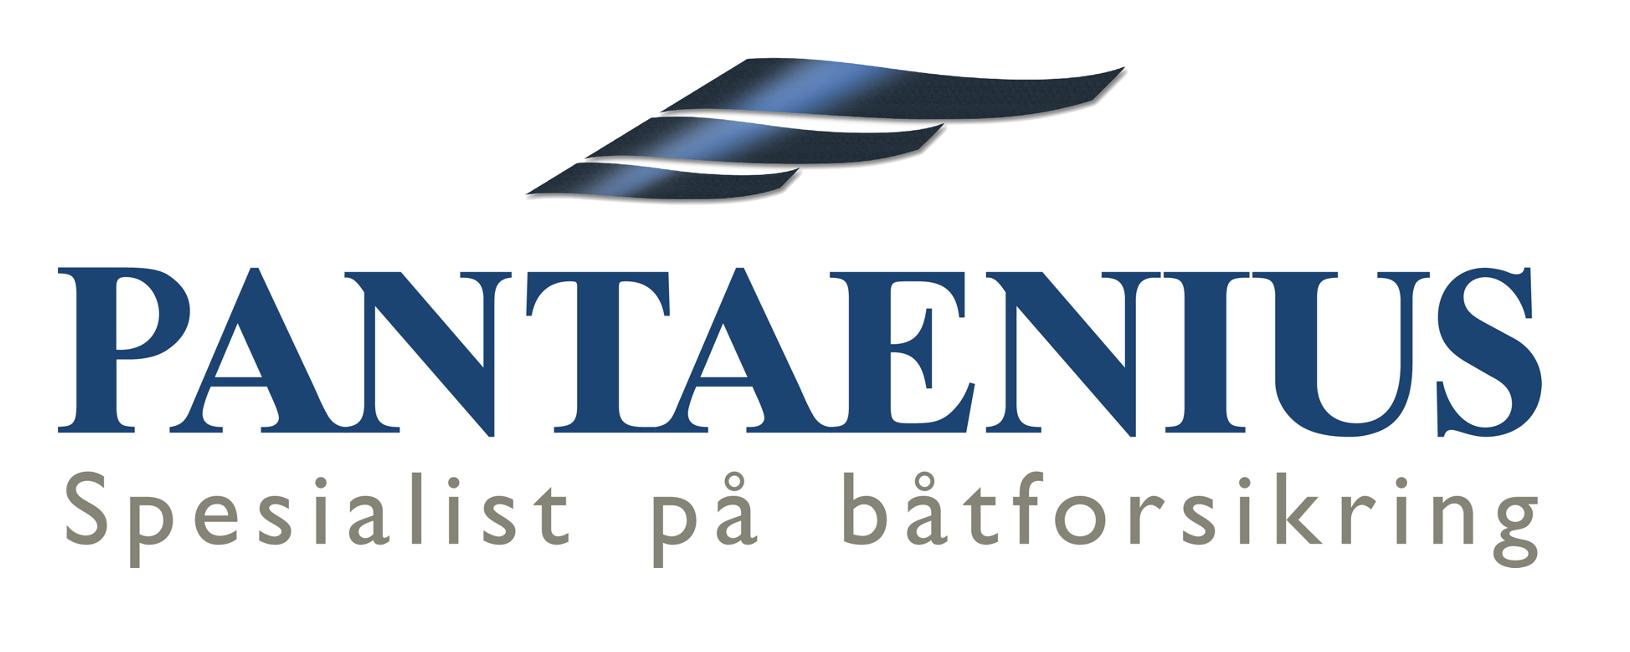 Pantaenius Yacht Insurance